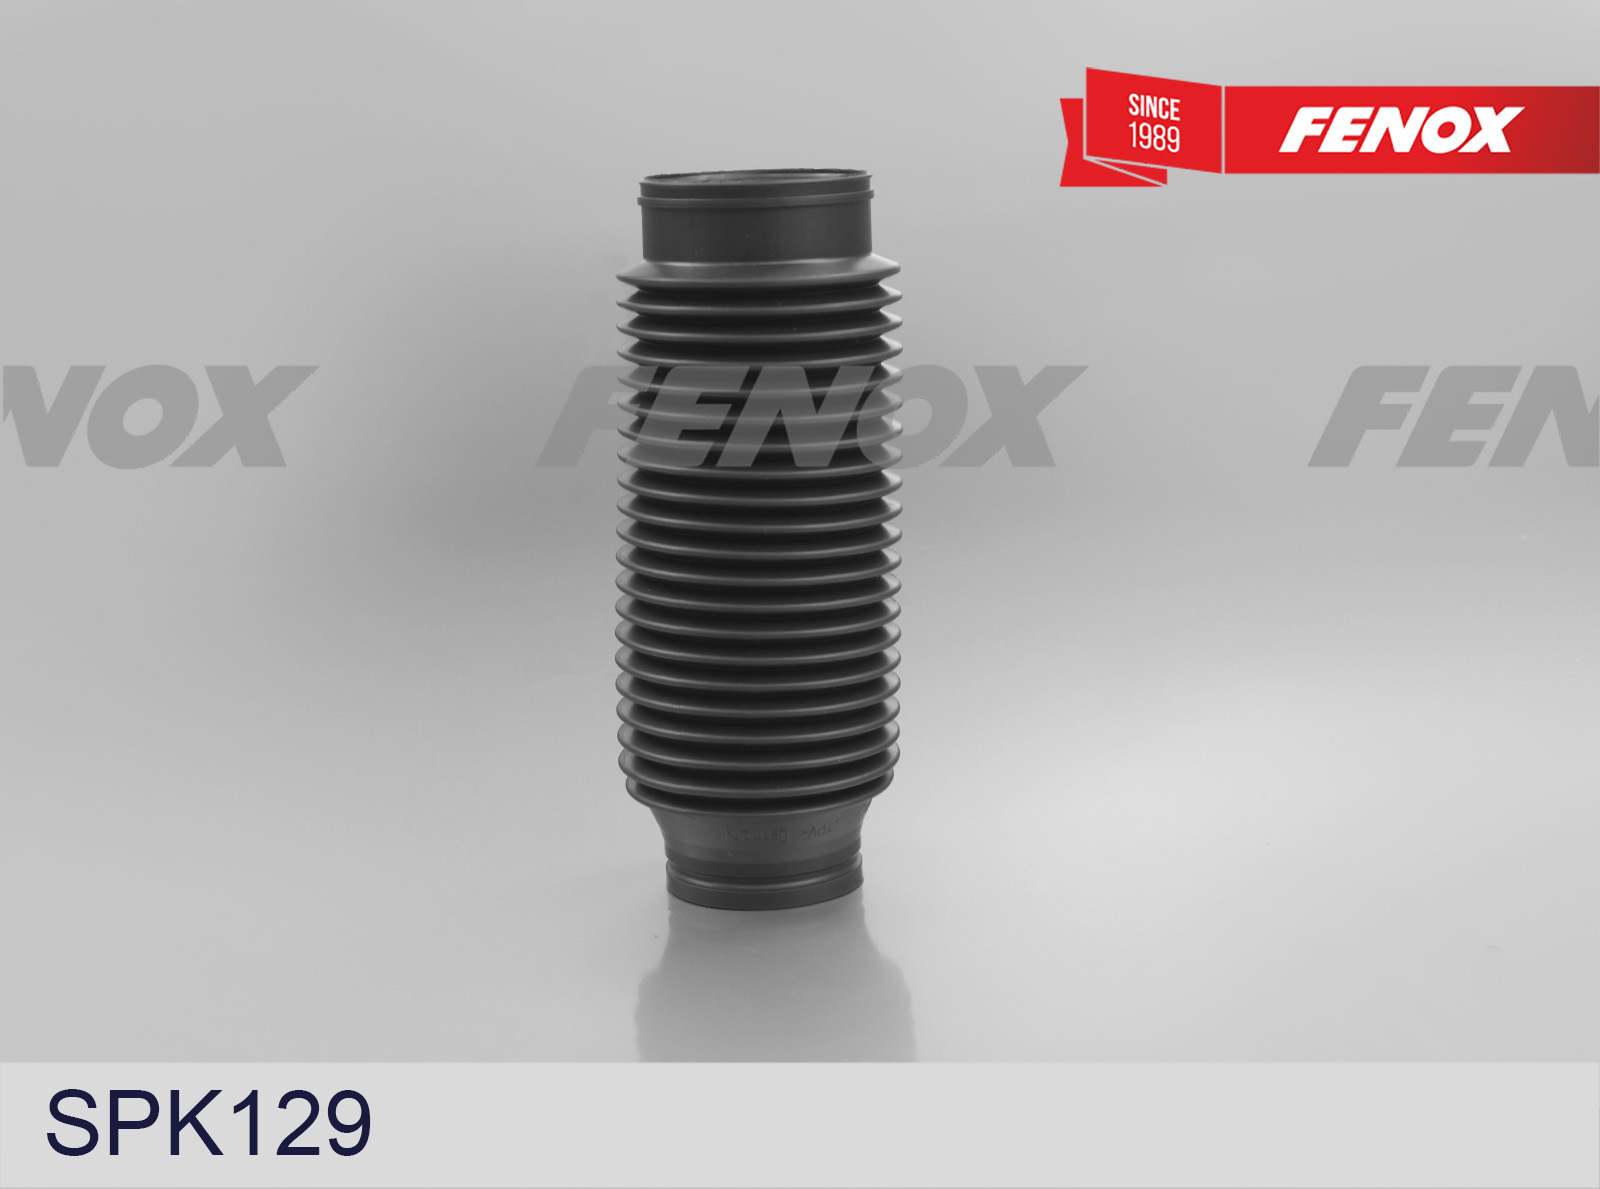 Пыльник амортизатора Fenox SPK129 - купить по цене от 509 руб, в интернет-магазине автозапчастей Parterra.ru